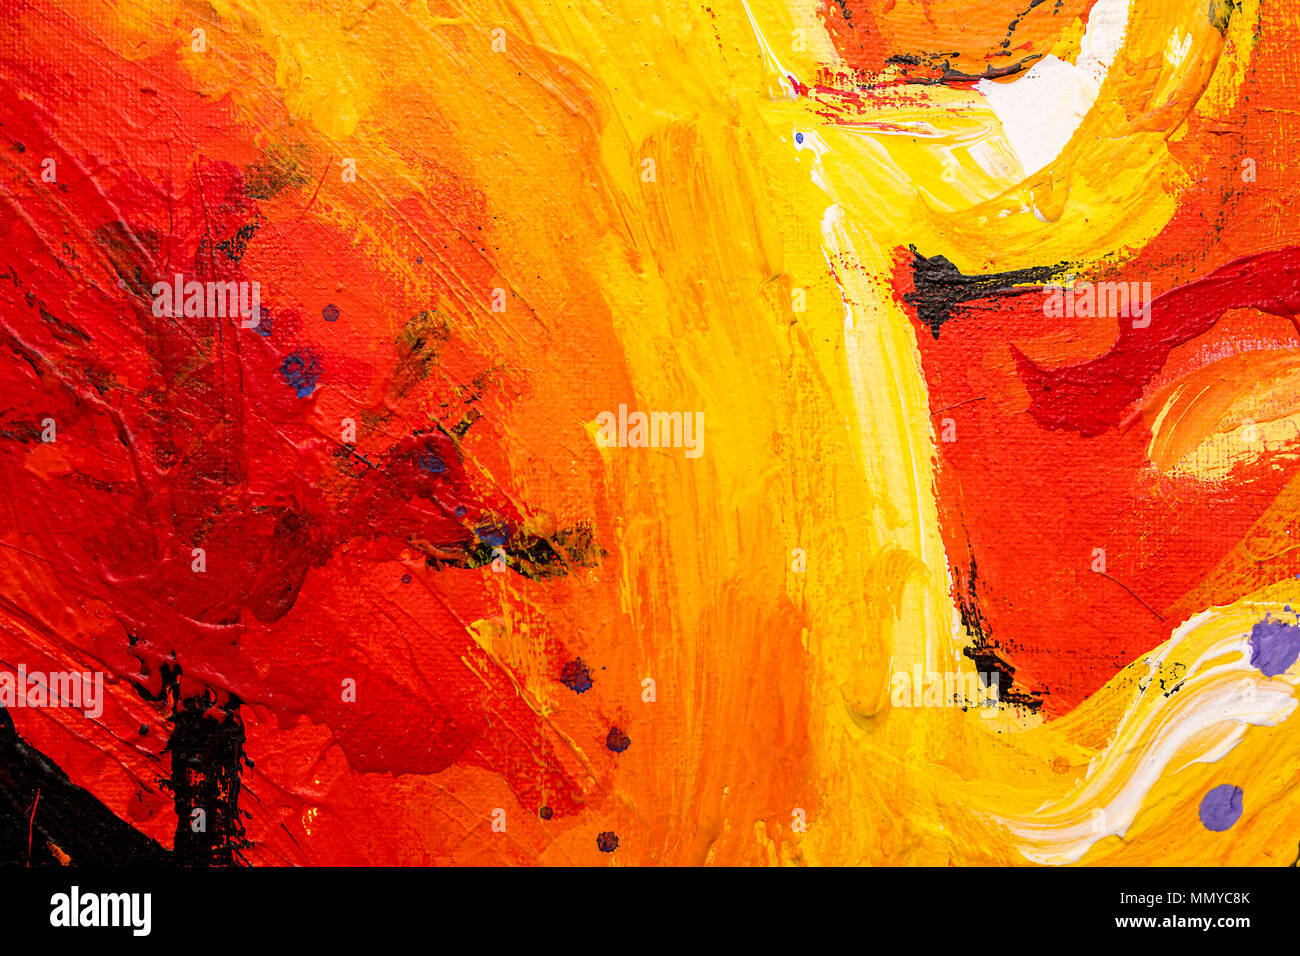 Eine lebendige, farbenfrohe und Öl und Acryl abstrakte Malerei auf Leinwand  gemalt mit wild und frei Pinselstriche in Rot, Orange und Gelb  Stockfotografie - Alamy